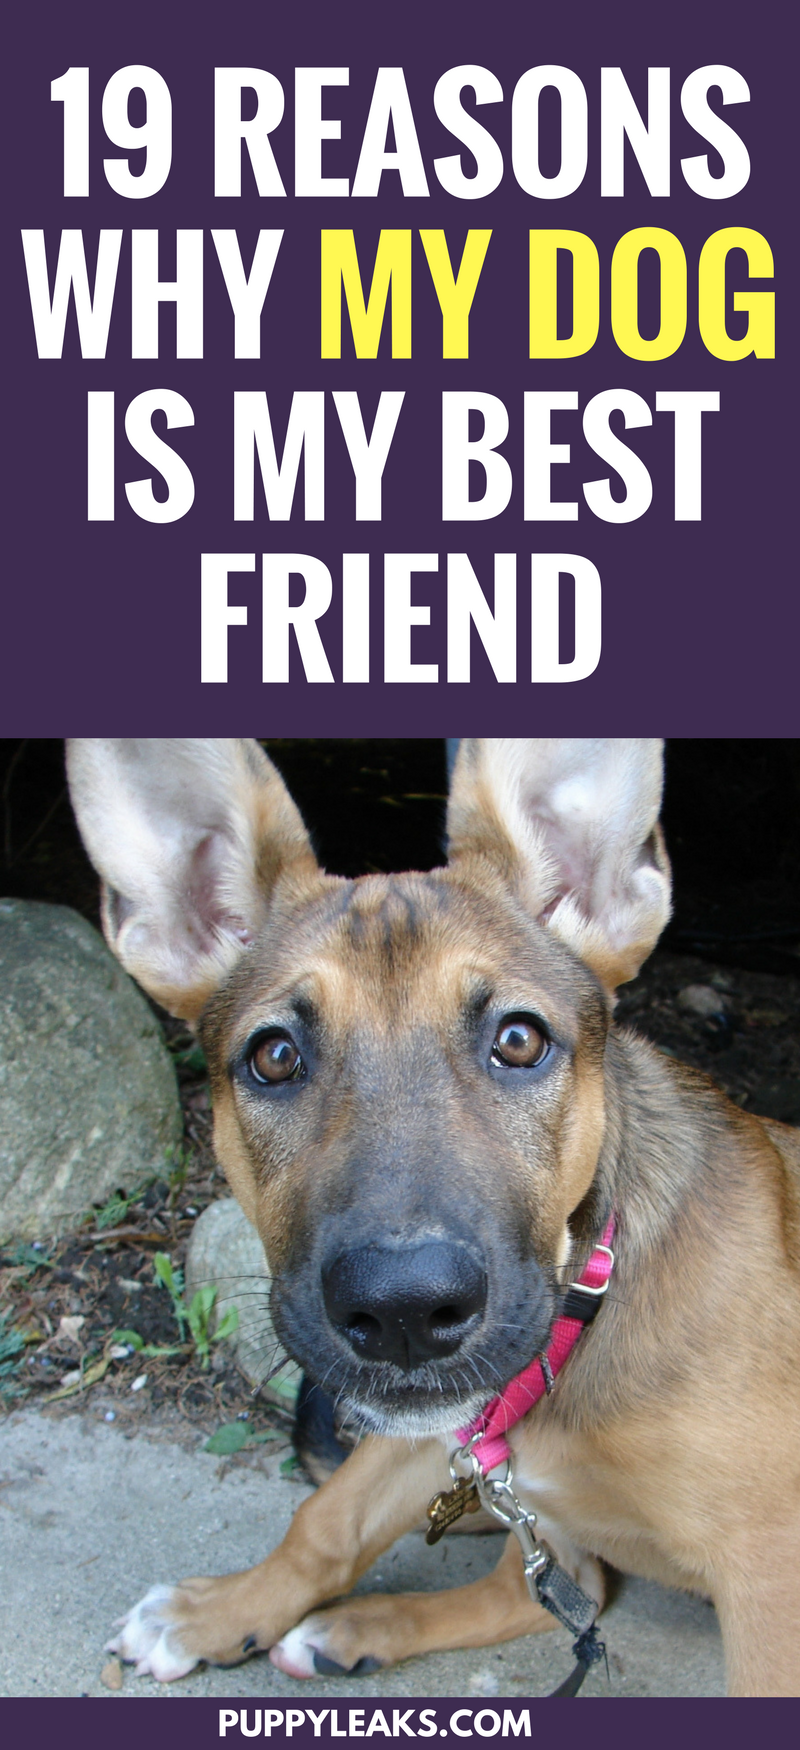 19 raisons pour lesquelles mon chien est mon meilleur ami